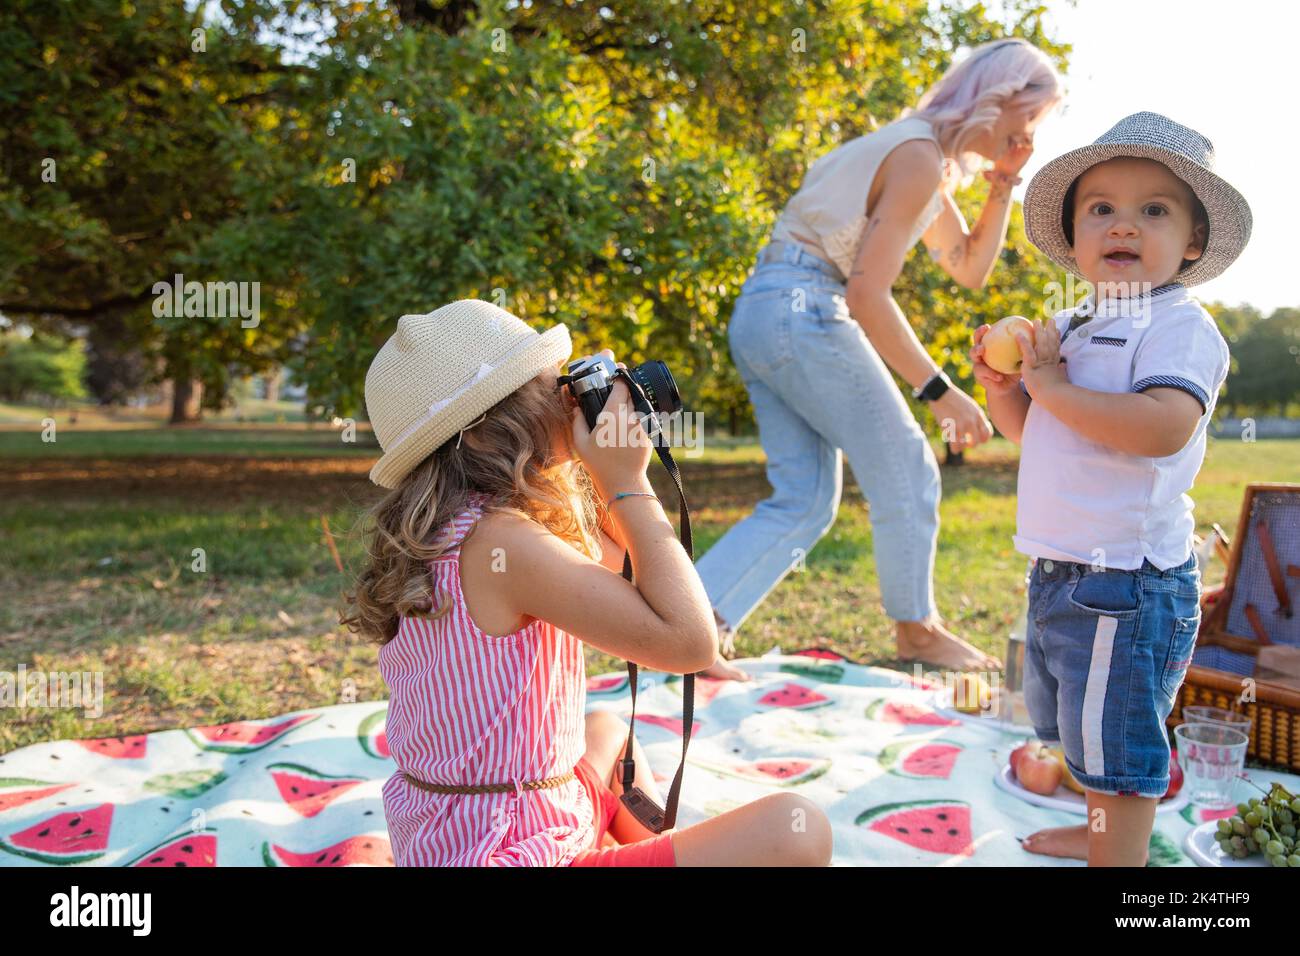 Baby Mädchen macht Fotos von Baby-Bruder mit Analogkamera, während Mama telefoniert während Picknick. Stockfoto